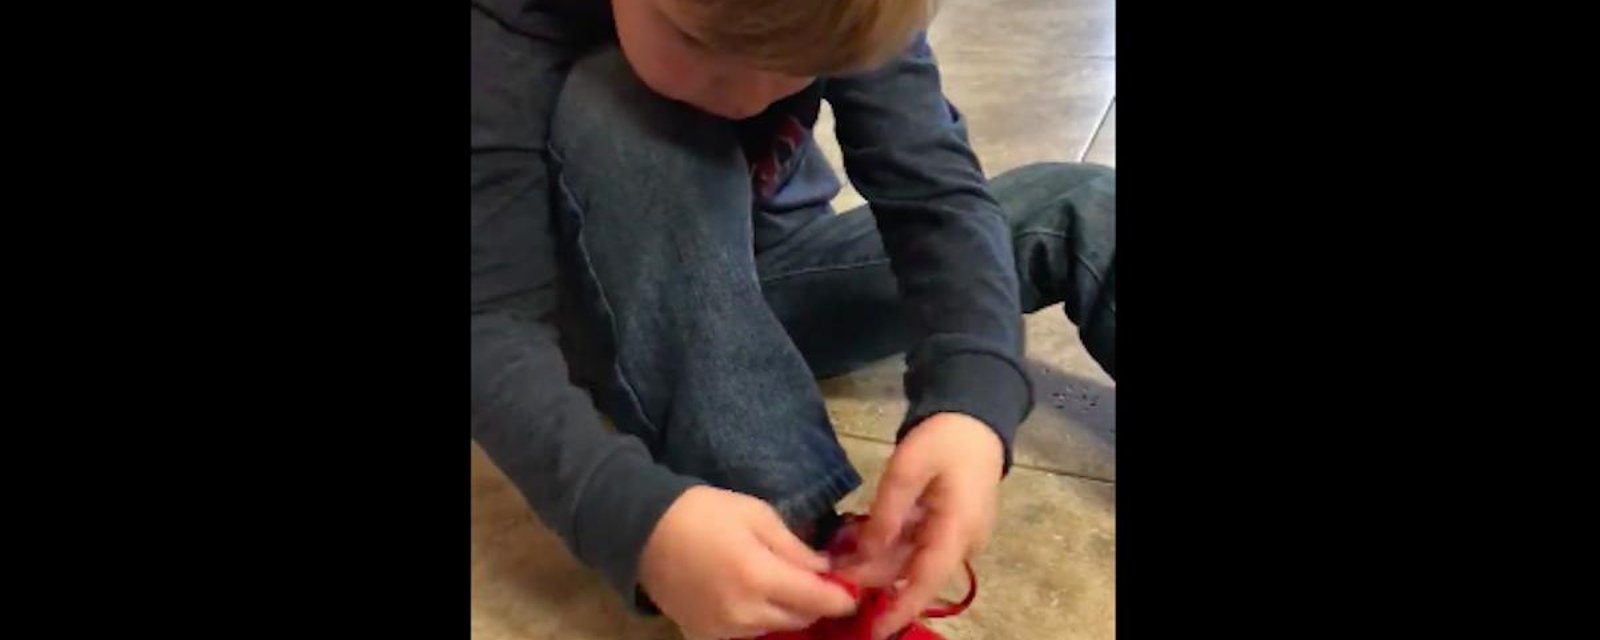 Ce petit garçon nous montre un super truc pour lacer des chaussures plus facilement